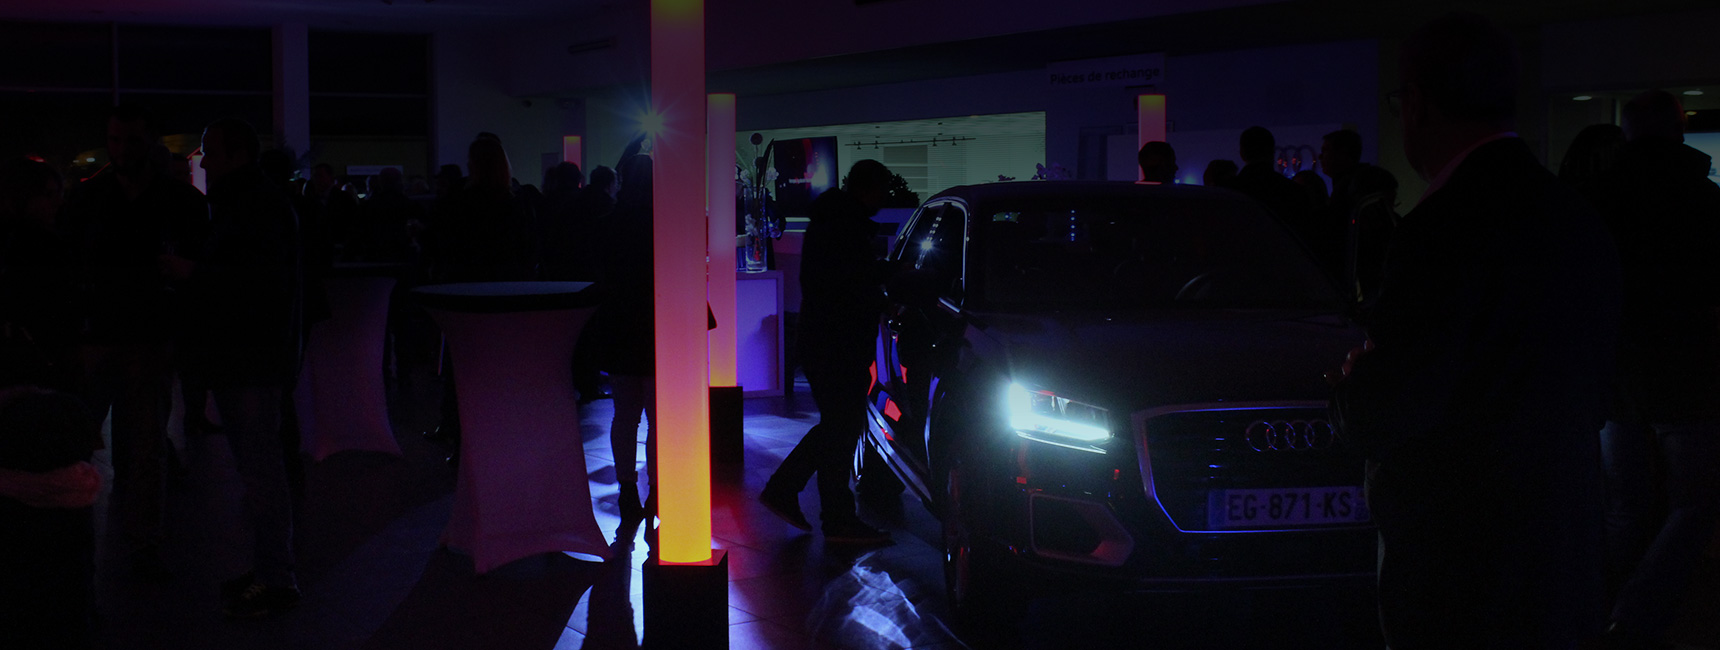 Lancement de produit Audi - Keemia Event et Expérience Agence événementielle et roadshow